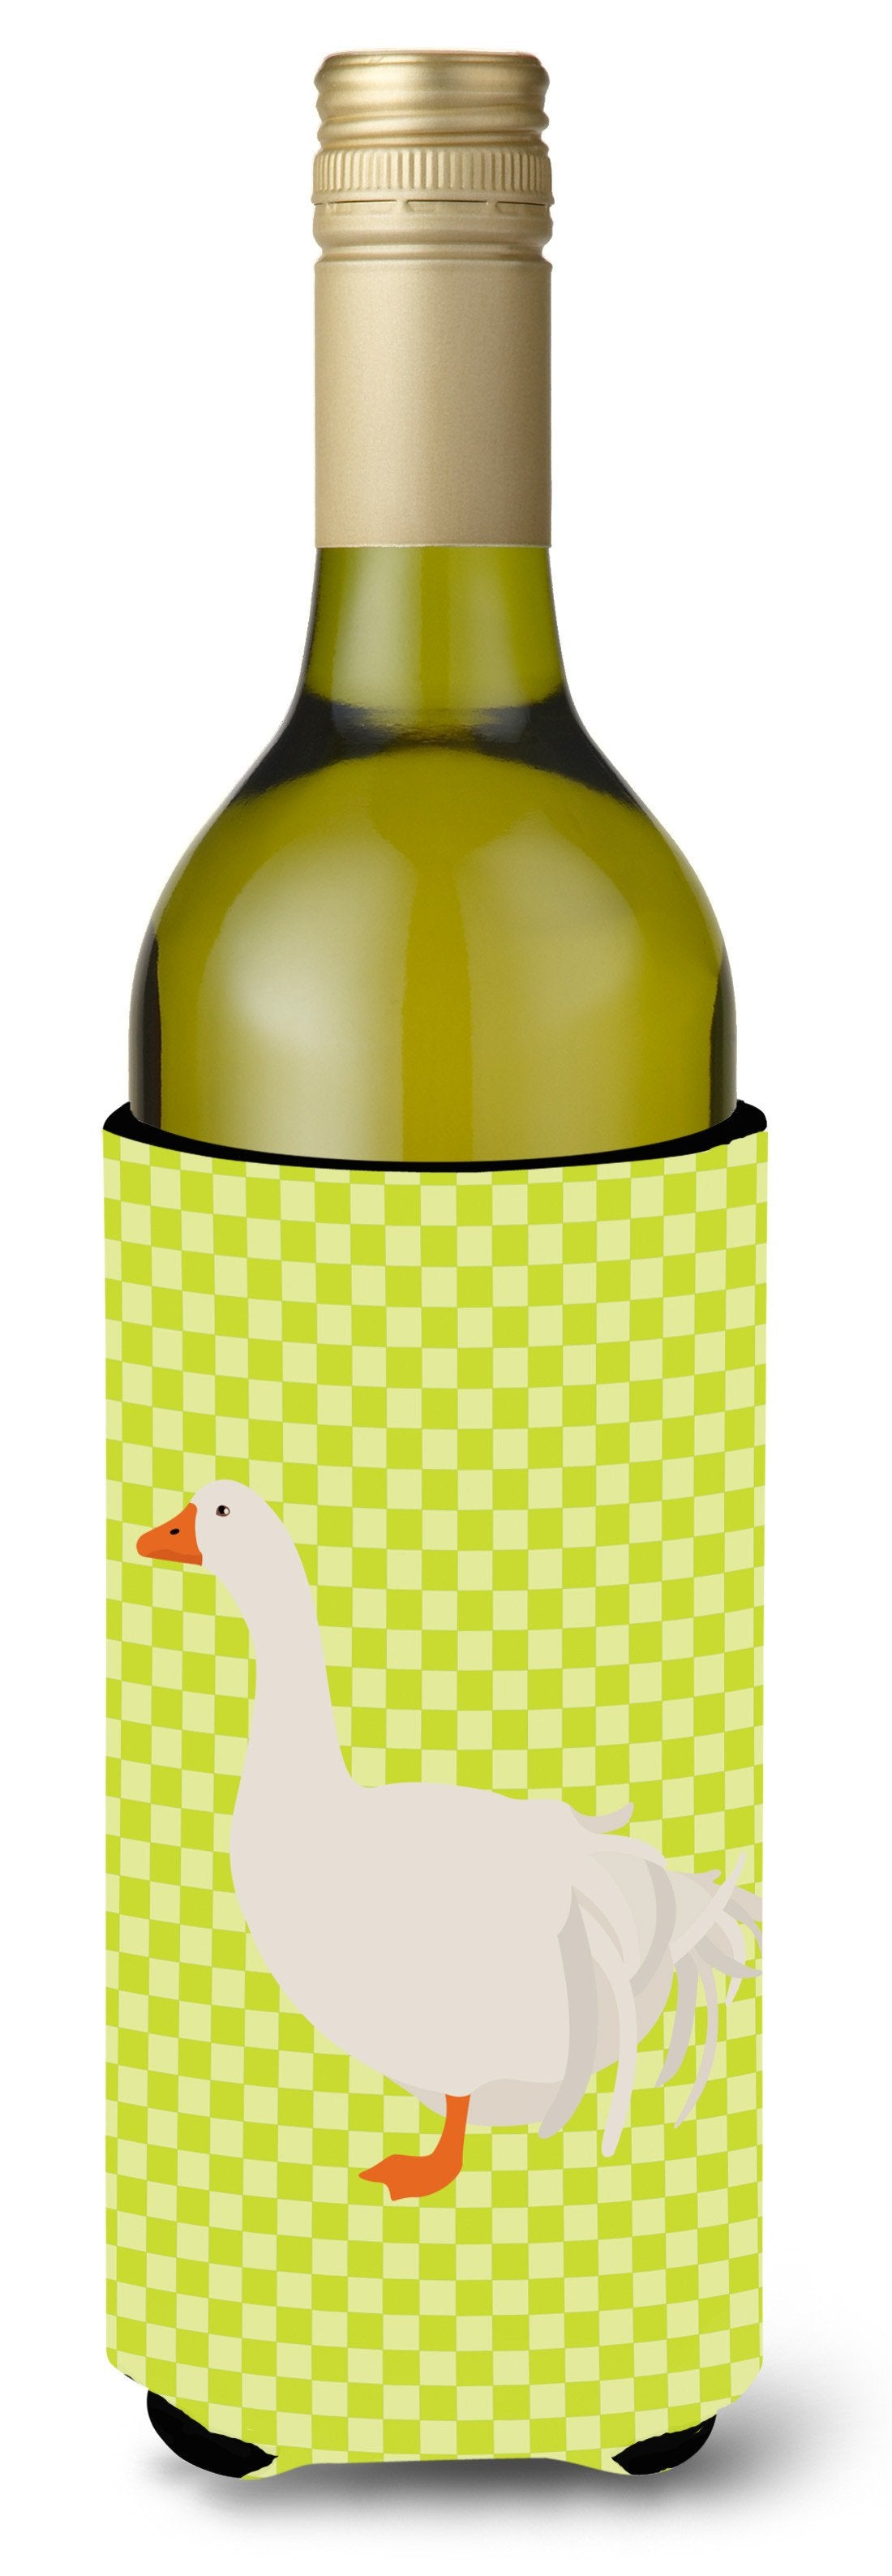 Sebastopol Goose Green Wine Bottle Beverge Insulator Hugger BB7728LITERK by Caroline's Treasures